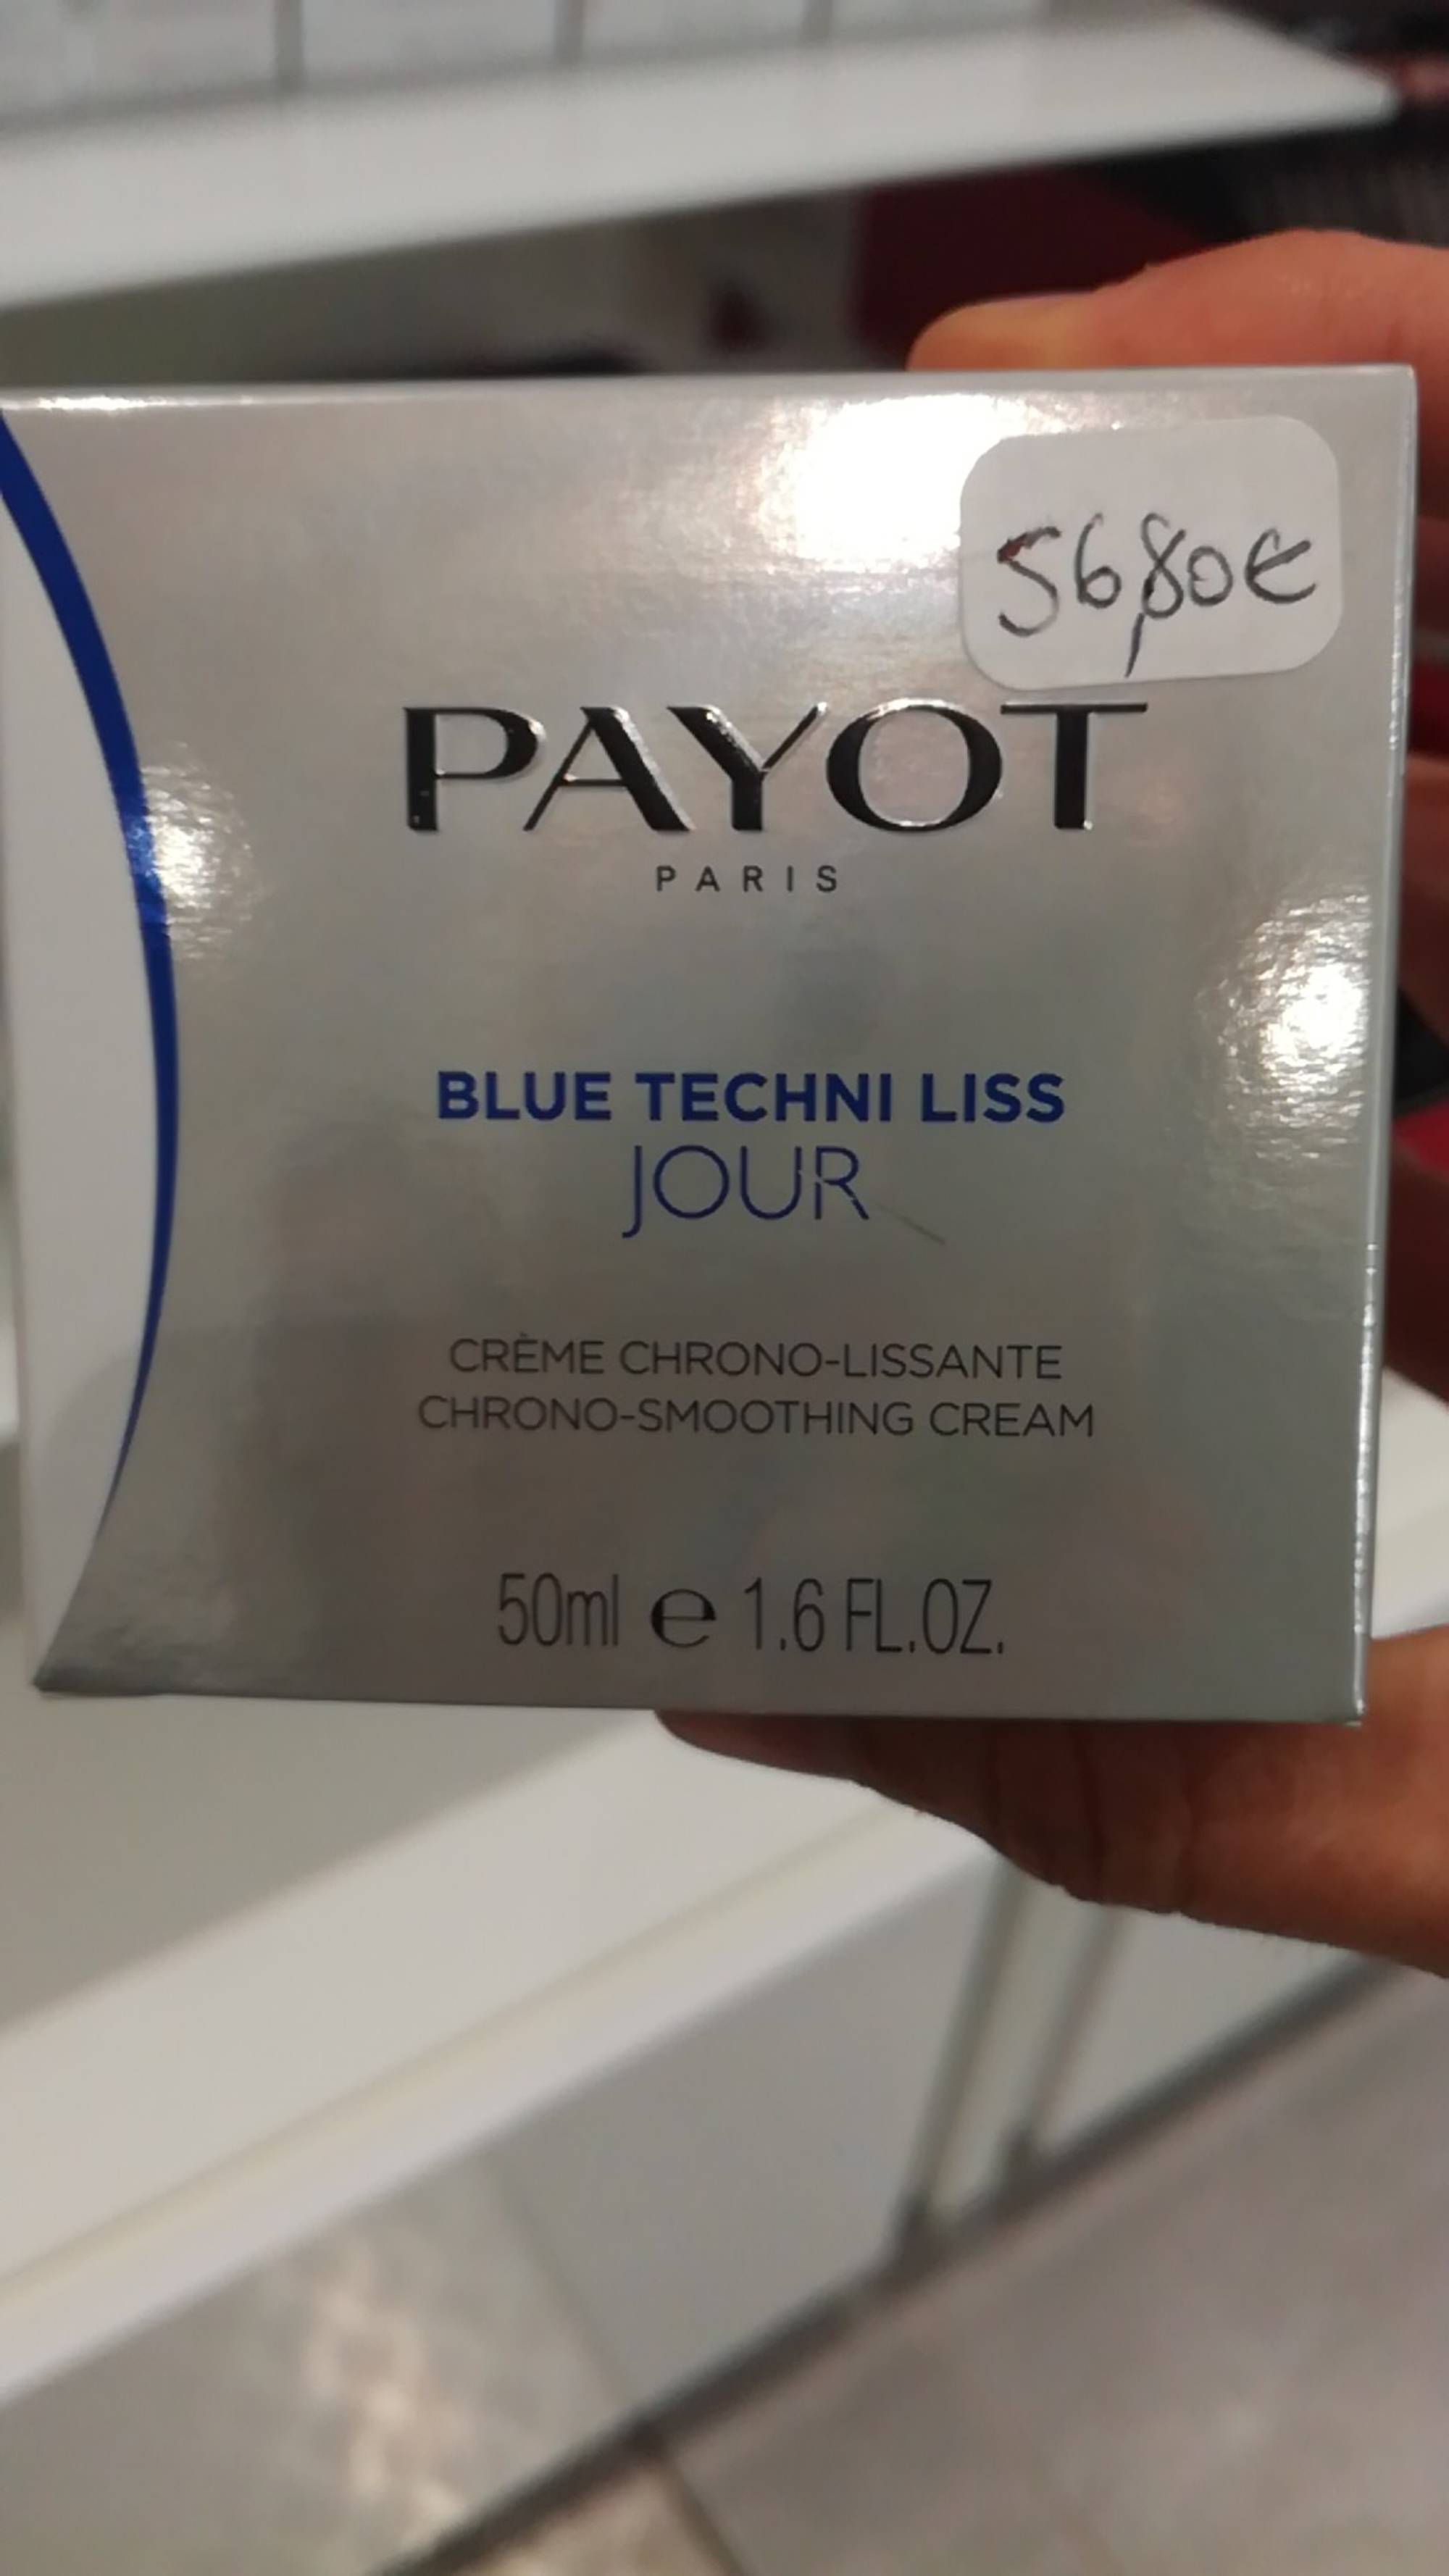 PAYOT - Blue techni liss jour - Crème chrono-lissante